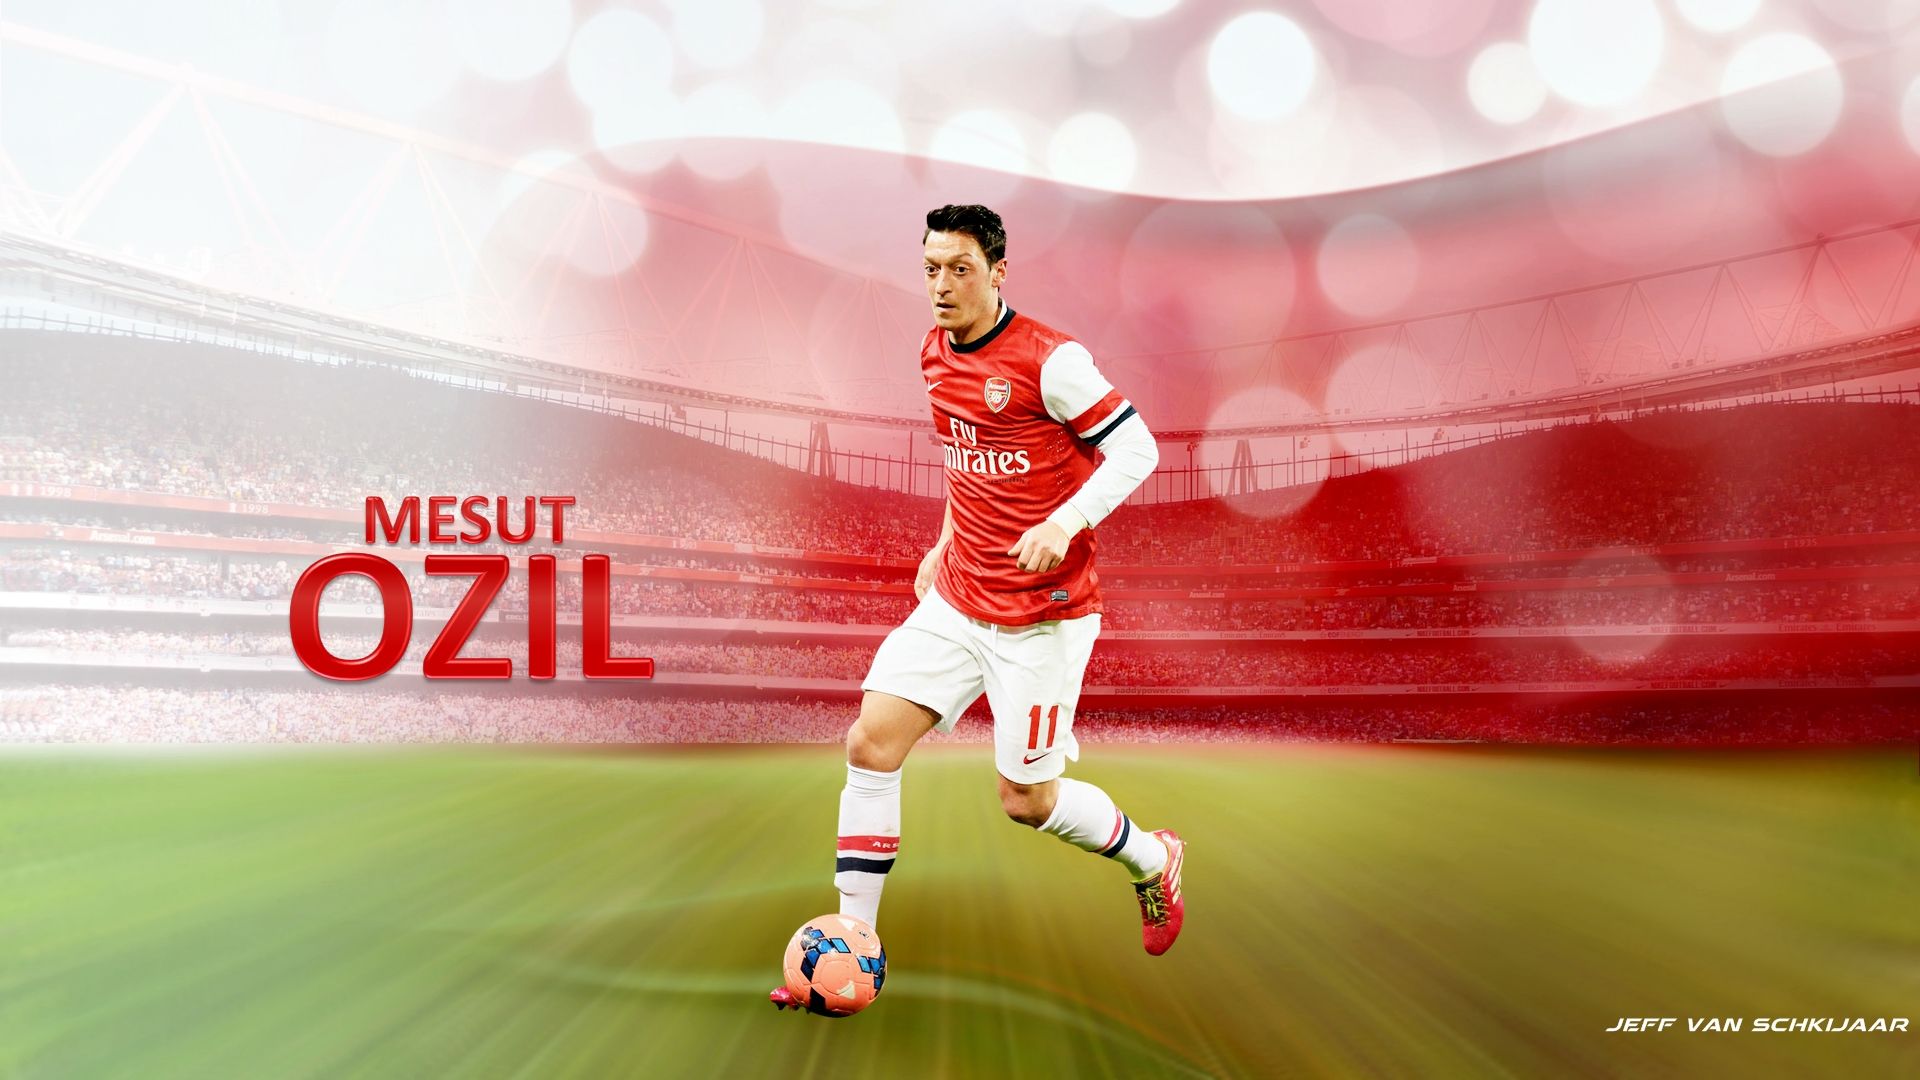 Mesut Ozil Arsenal Wallpaper HD 2014 2 Football Wallpaper HD 1920x1080